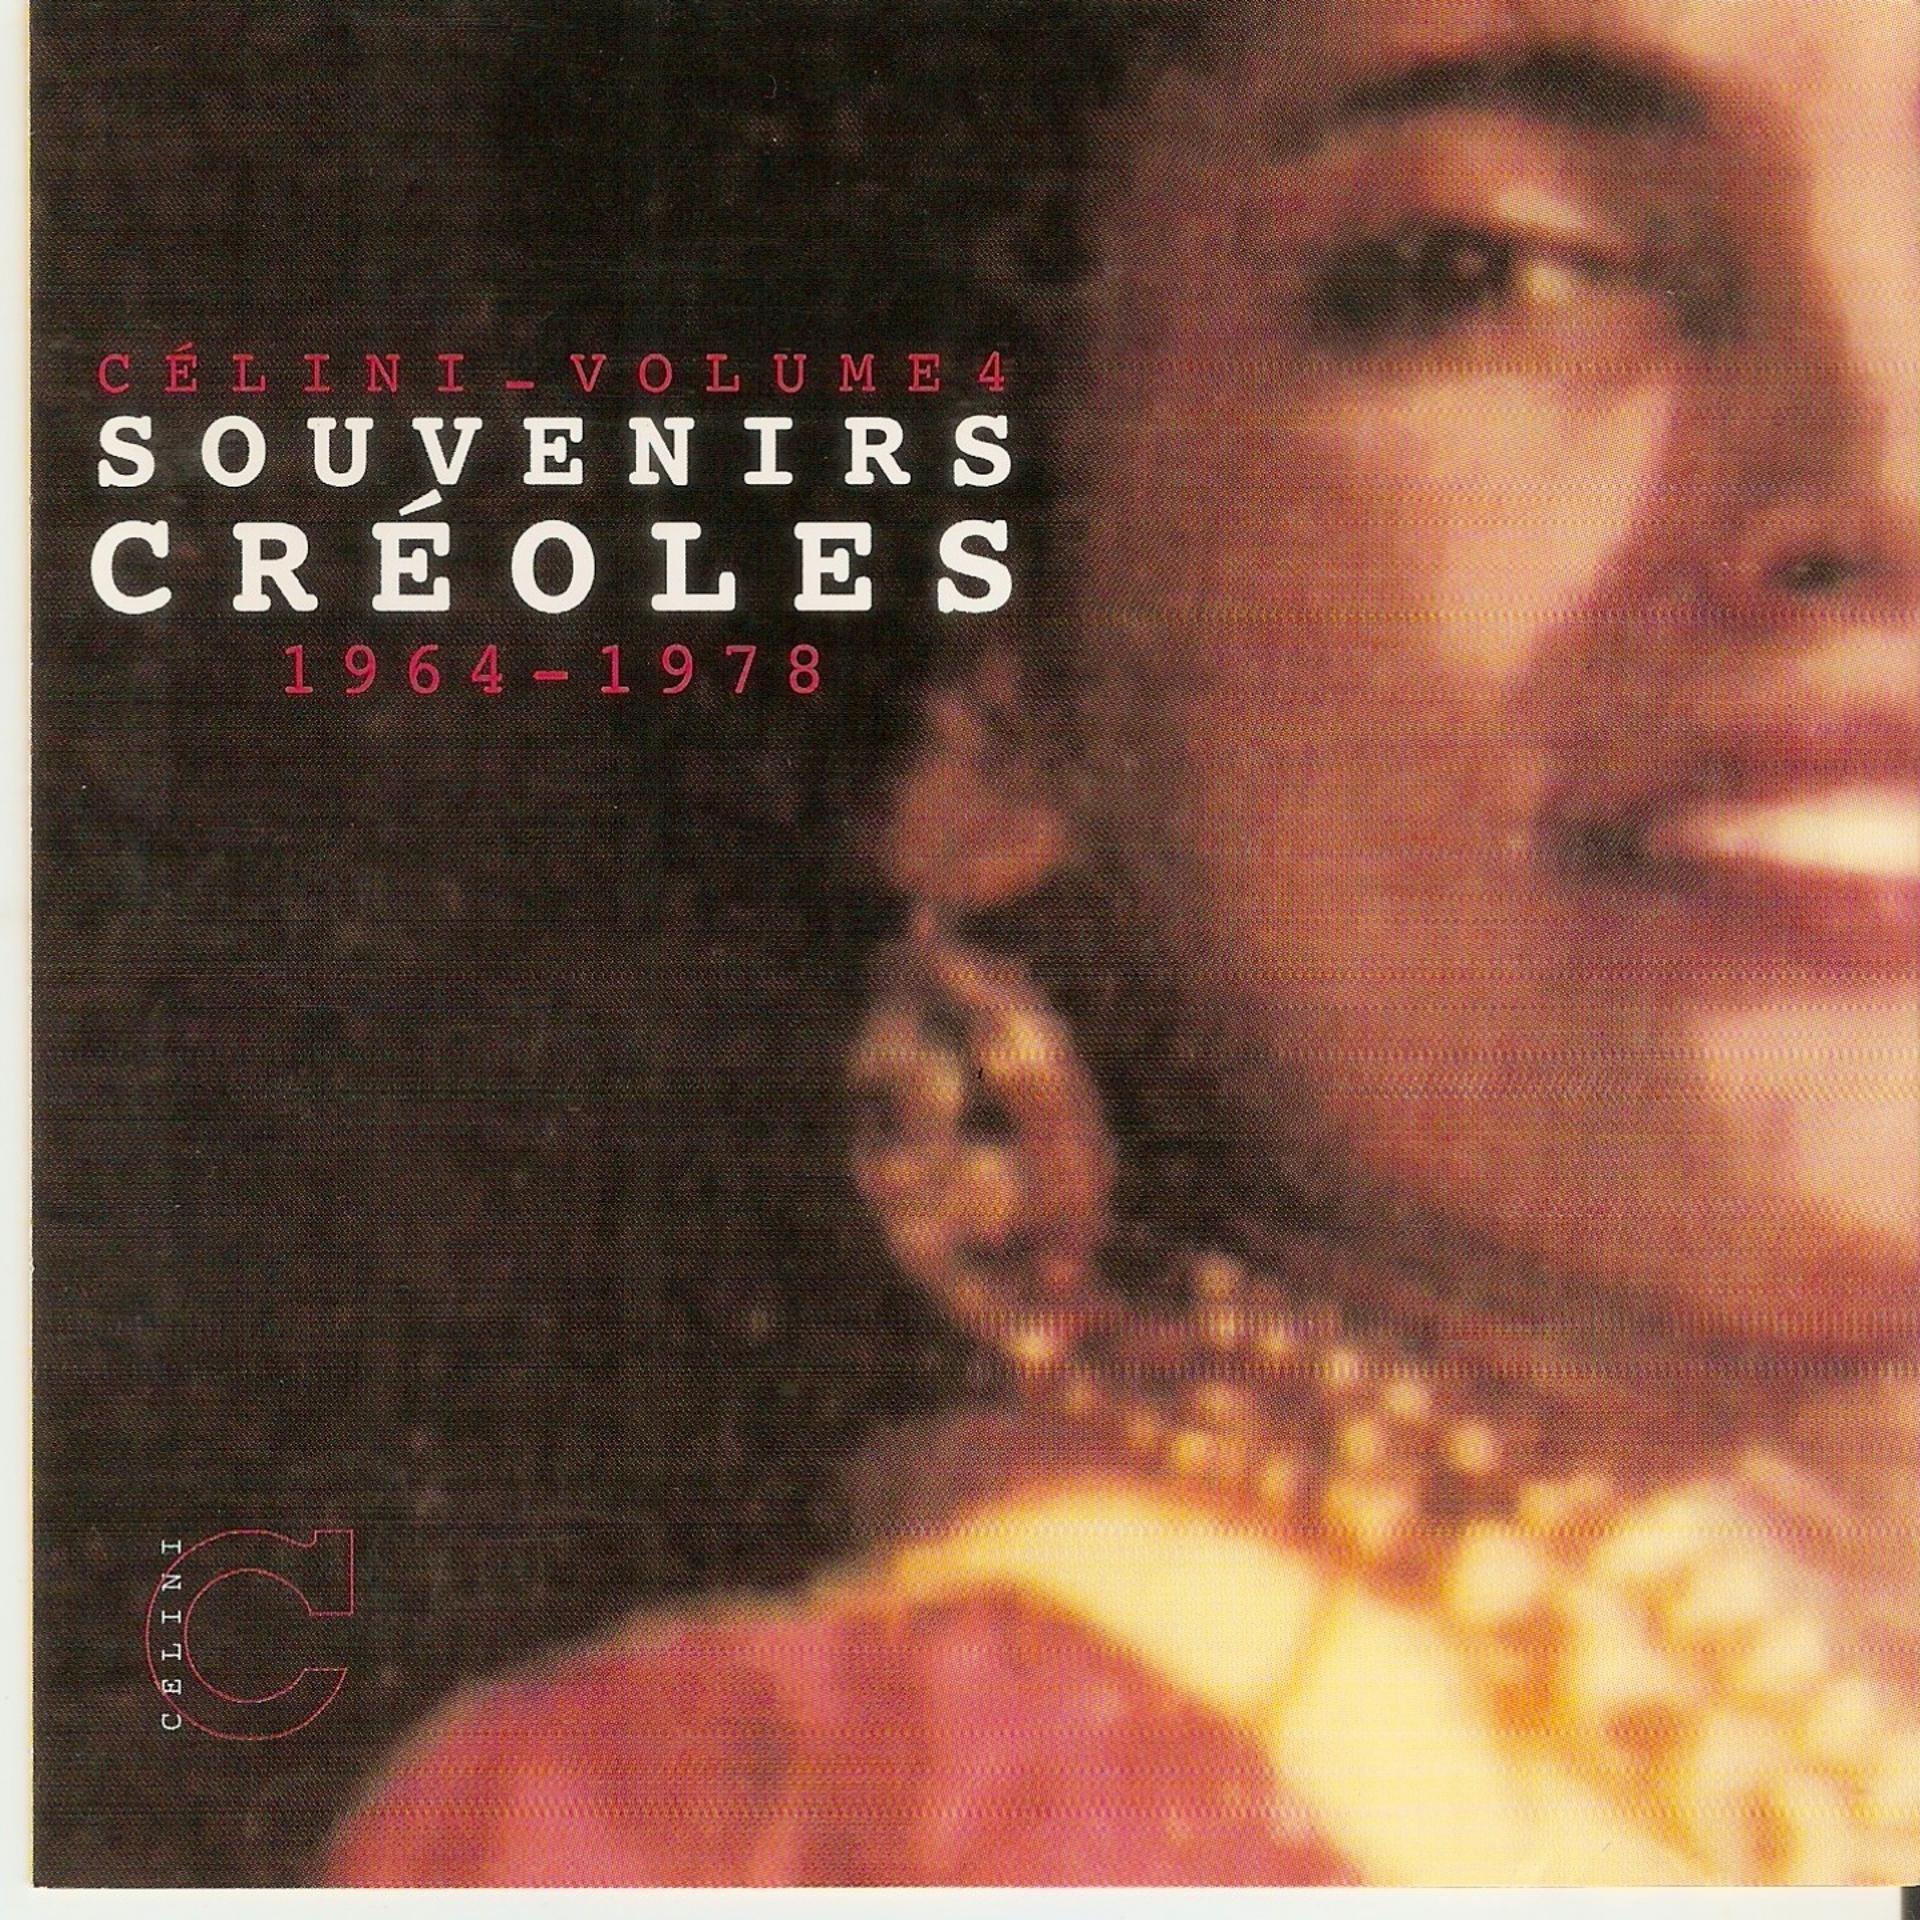 Постер альбома Souvenirs créoles celini, vol. 4